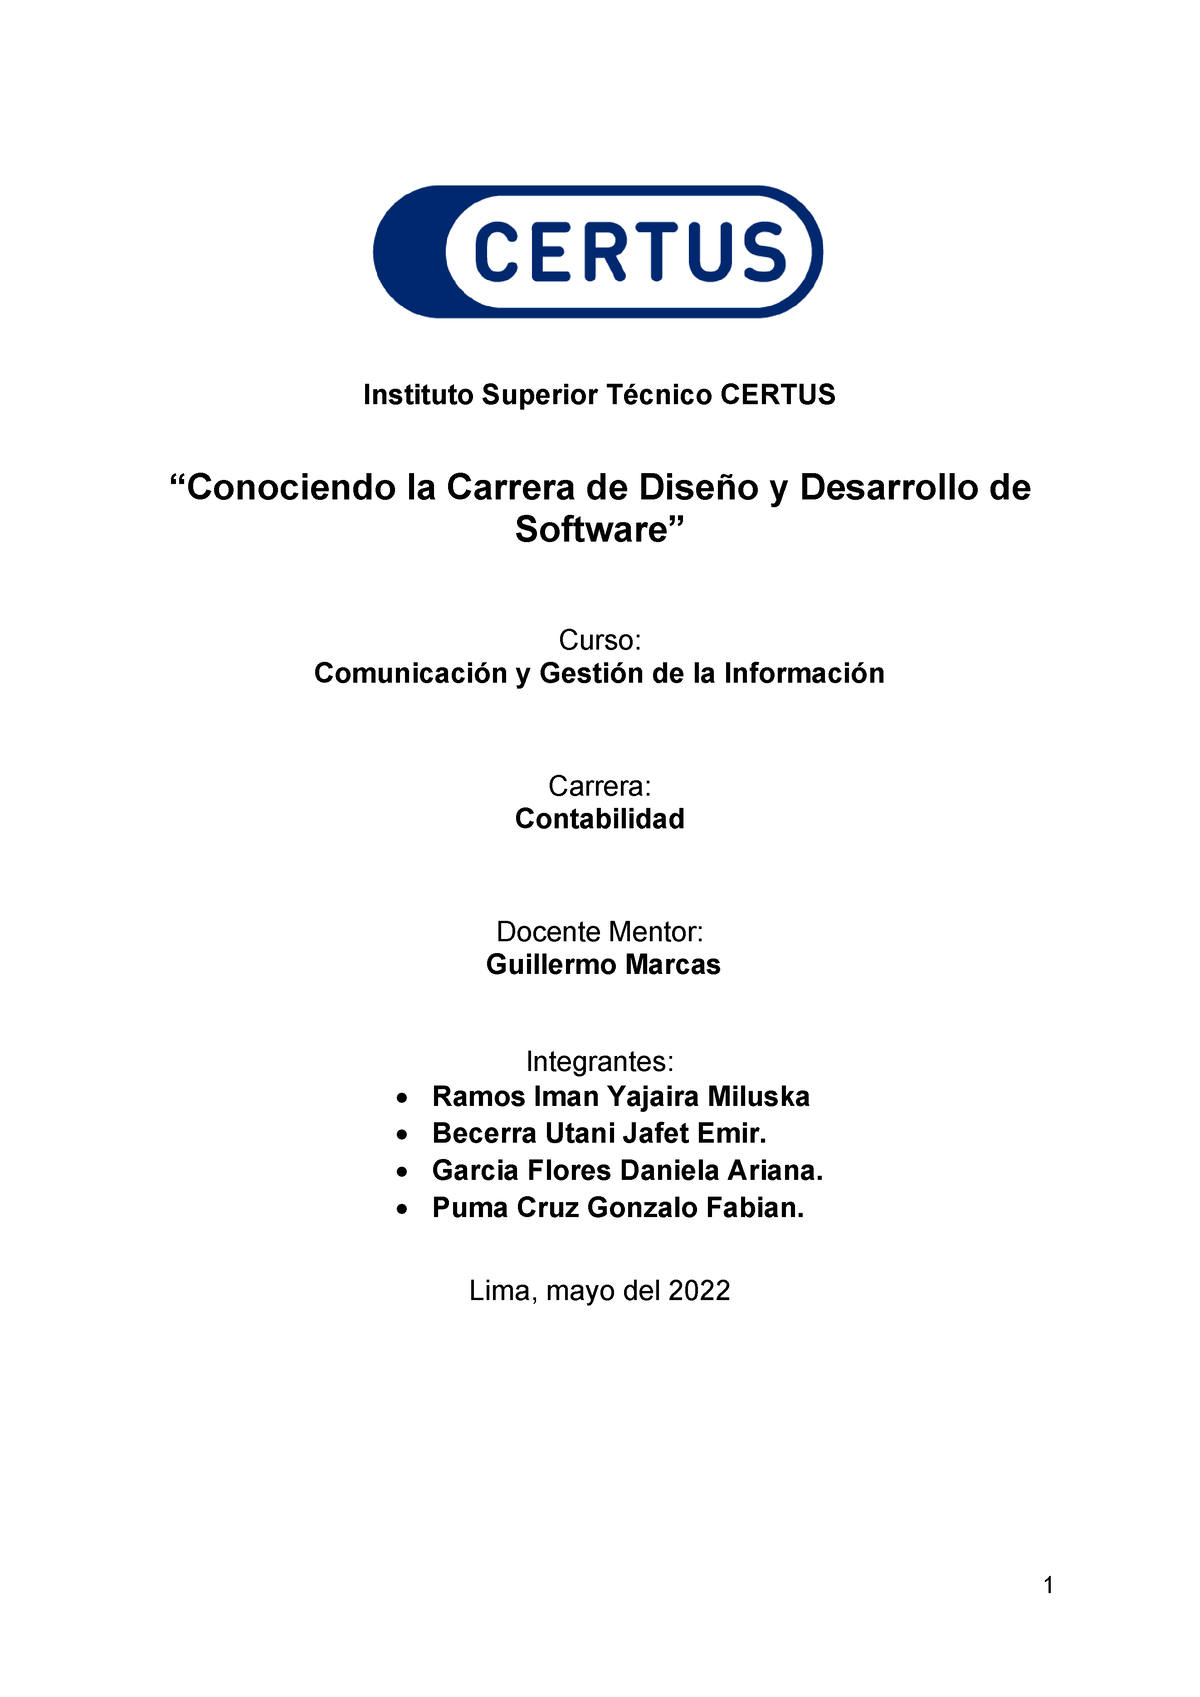 Comunicación y Gestión G5 R79 - Desarrollo y Diseño de Software - Instituto  Superior Técnico CERTUS - Studocu